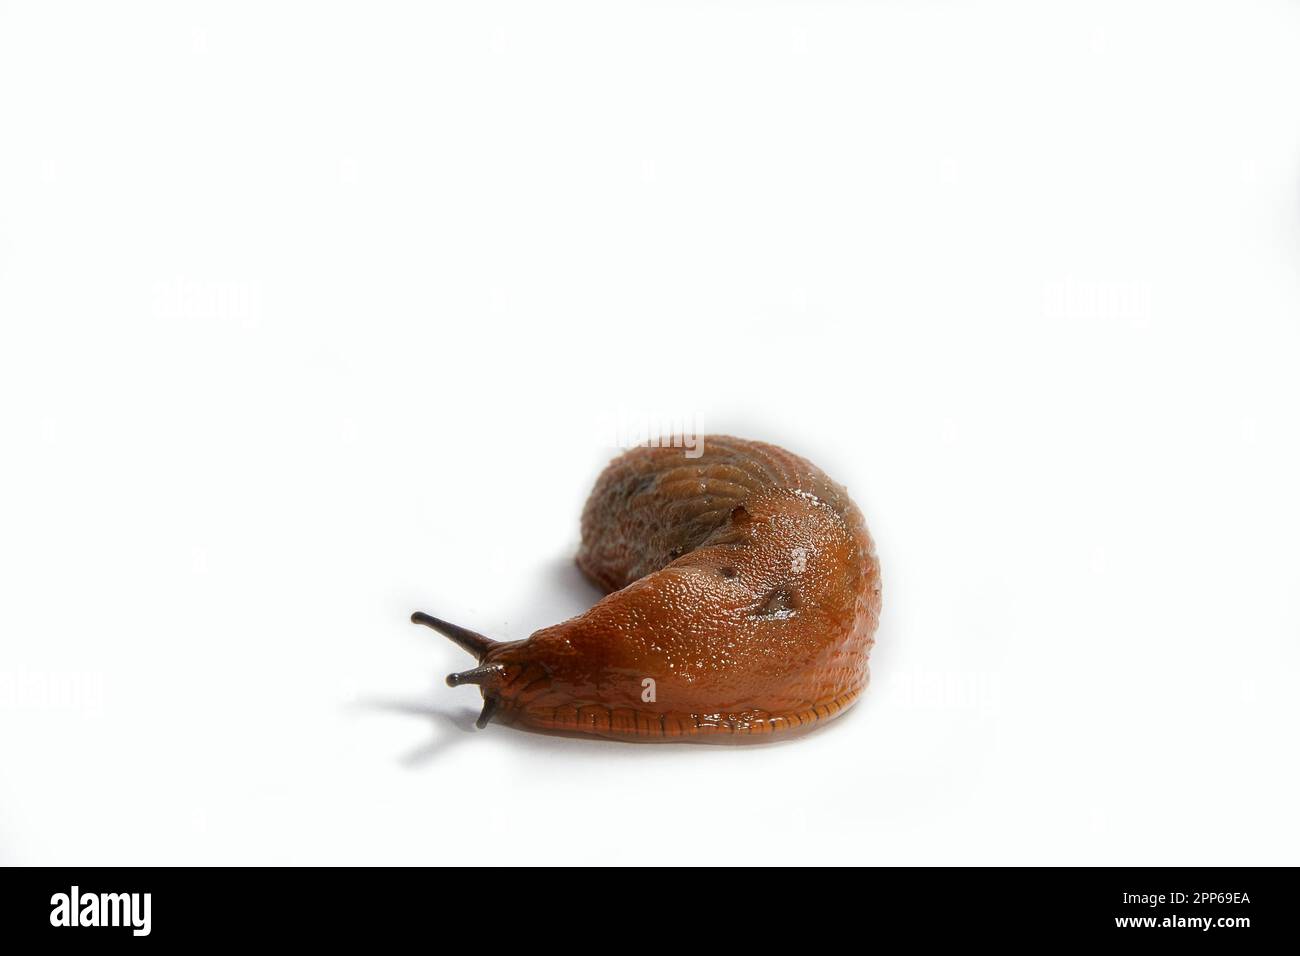 Big Spanish Slug Arion vulgaris. Isolated on white background. Stock Photo